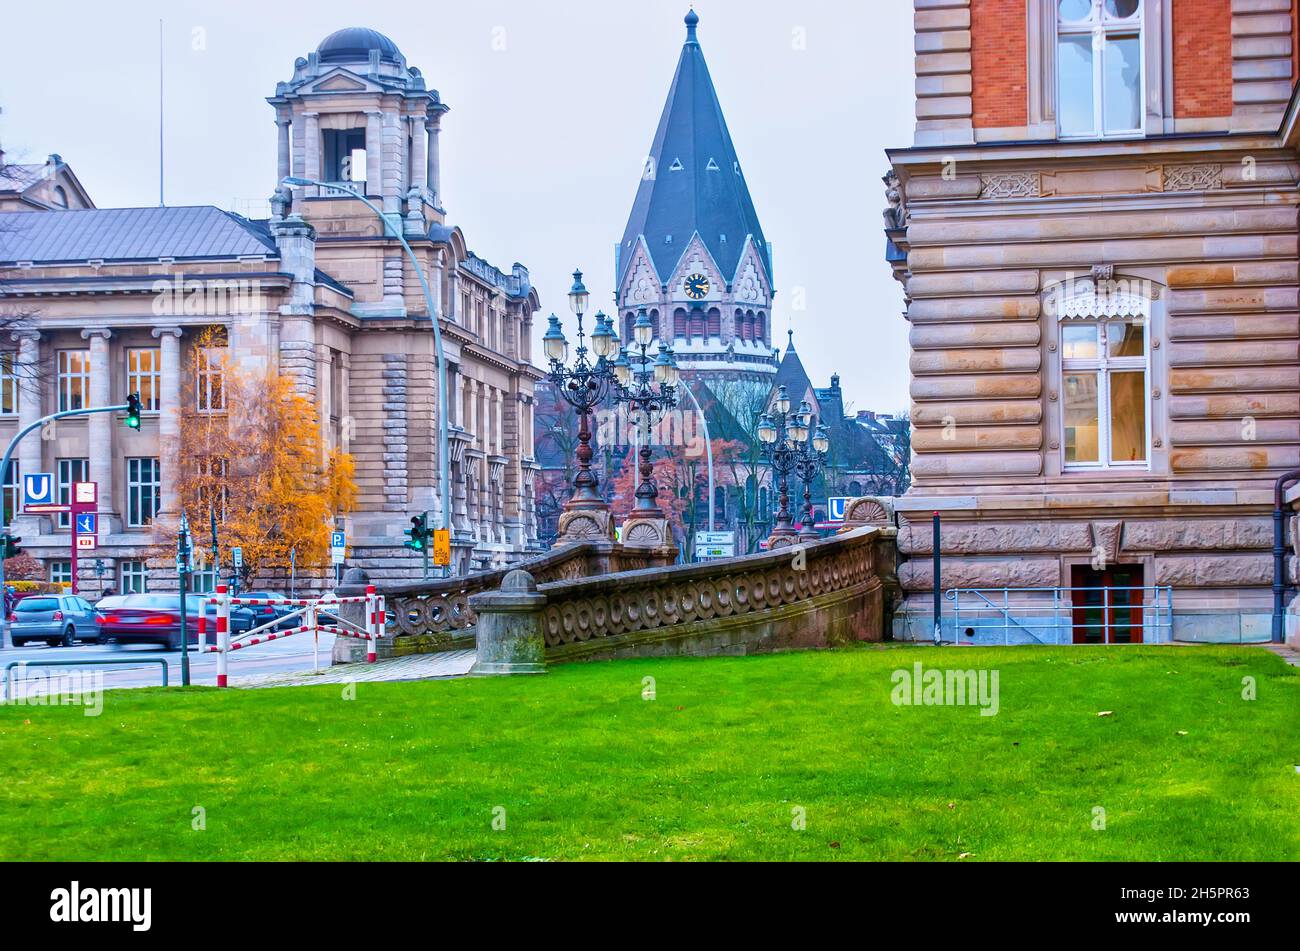 Scena urbana su Sievekingplatz con ringhiere in pietra di costruzione della giustizia e cupola della Chiesa di San Giovanni di Kronstadt sullo sfondo, Amburgo, Germania Foto Stock